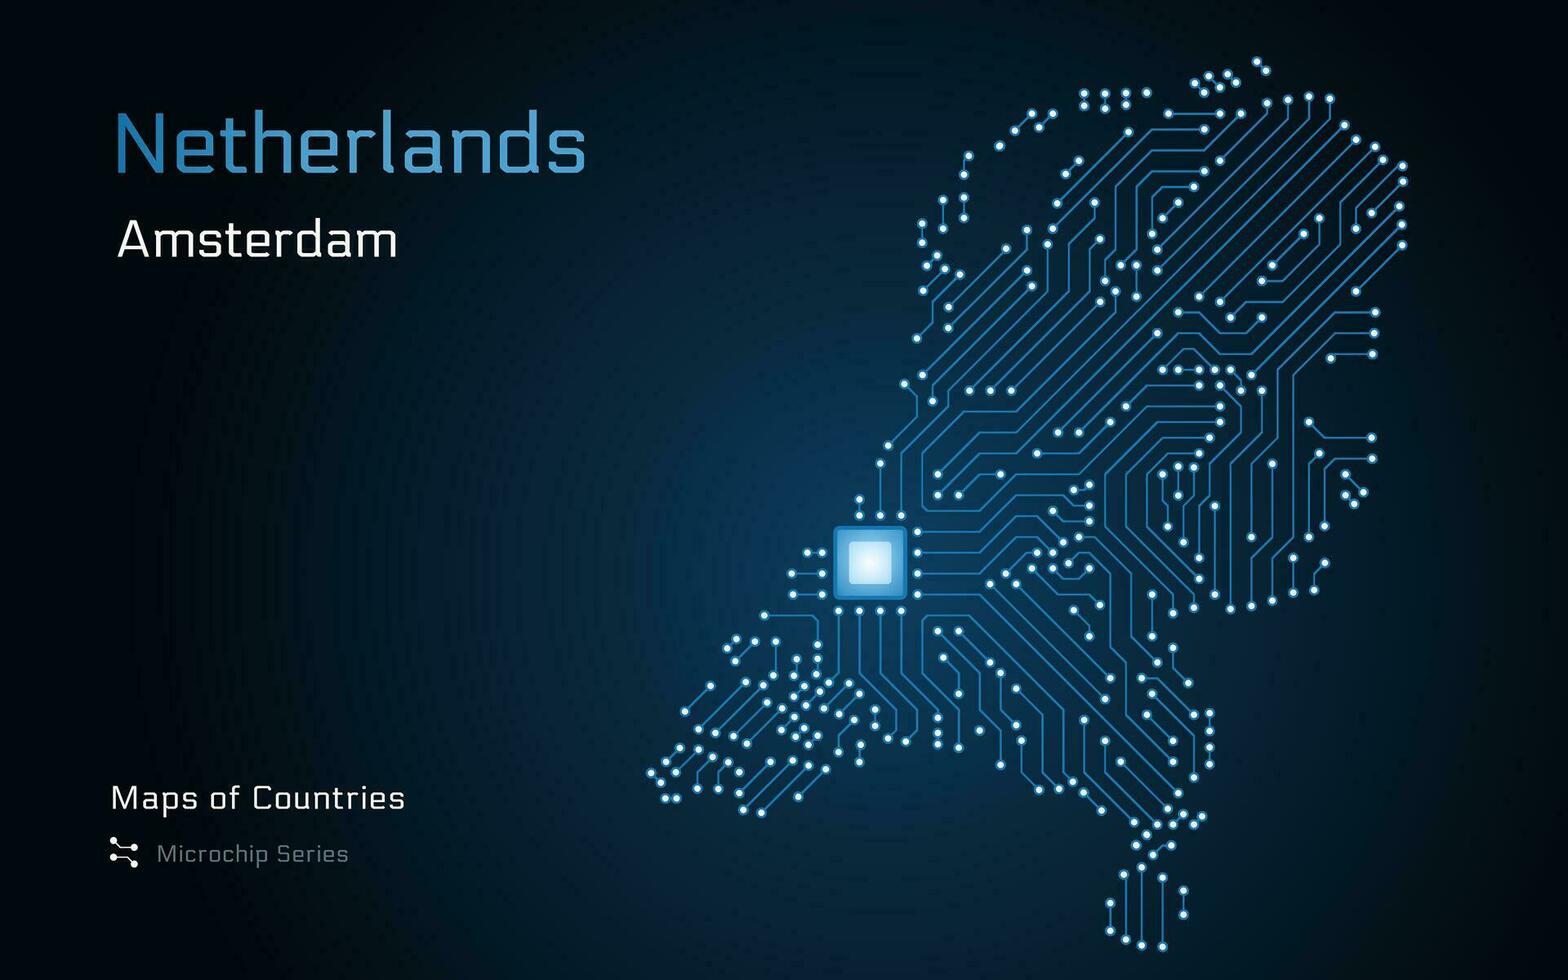 nederländerna Karta med krets styrelse och elektronisk komponenter med huvudstad amsterdam vektor